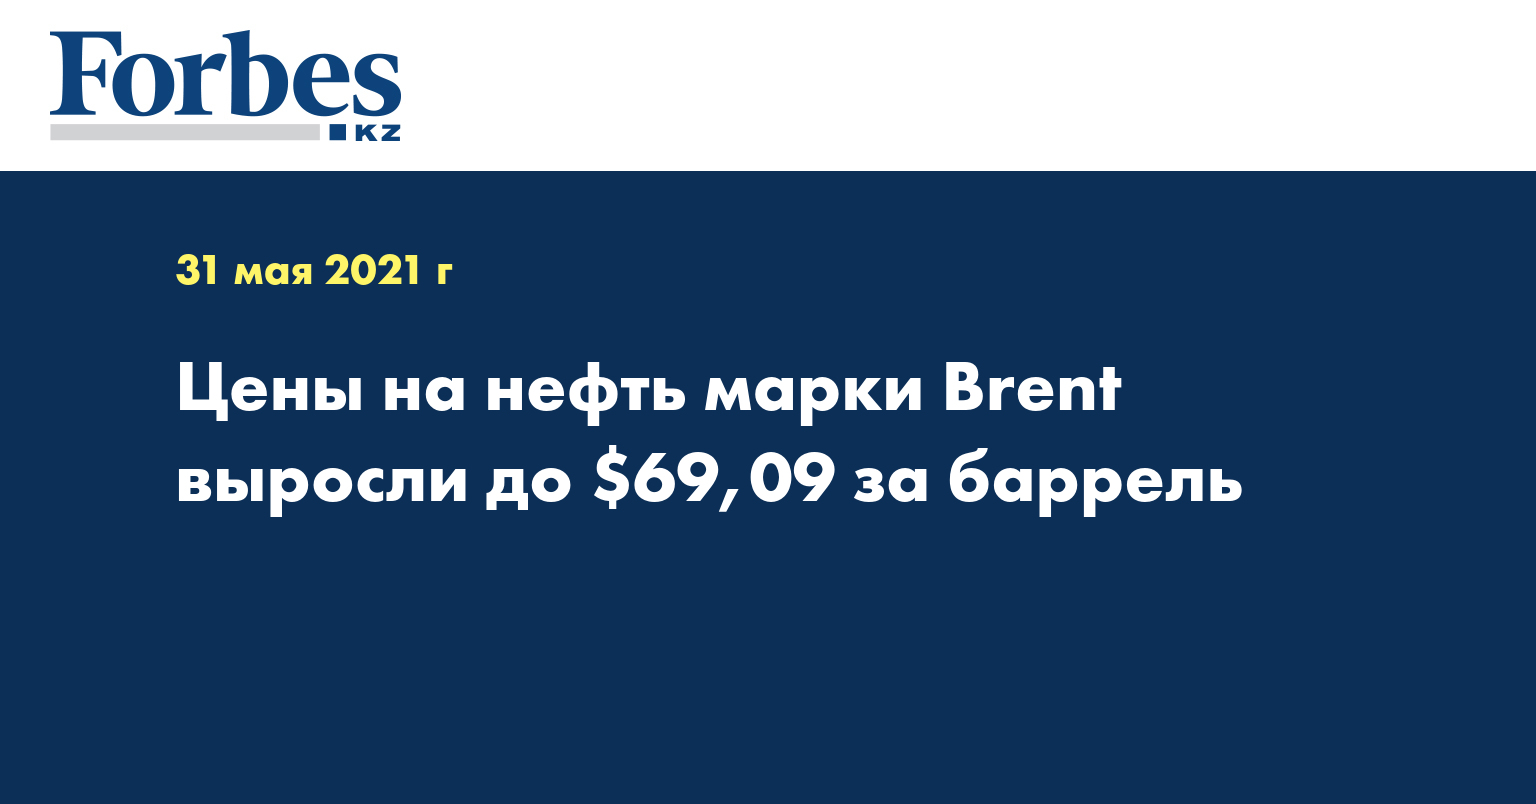 Цены на нефть марки Brent выросли до $69,09 за баррель